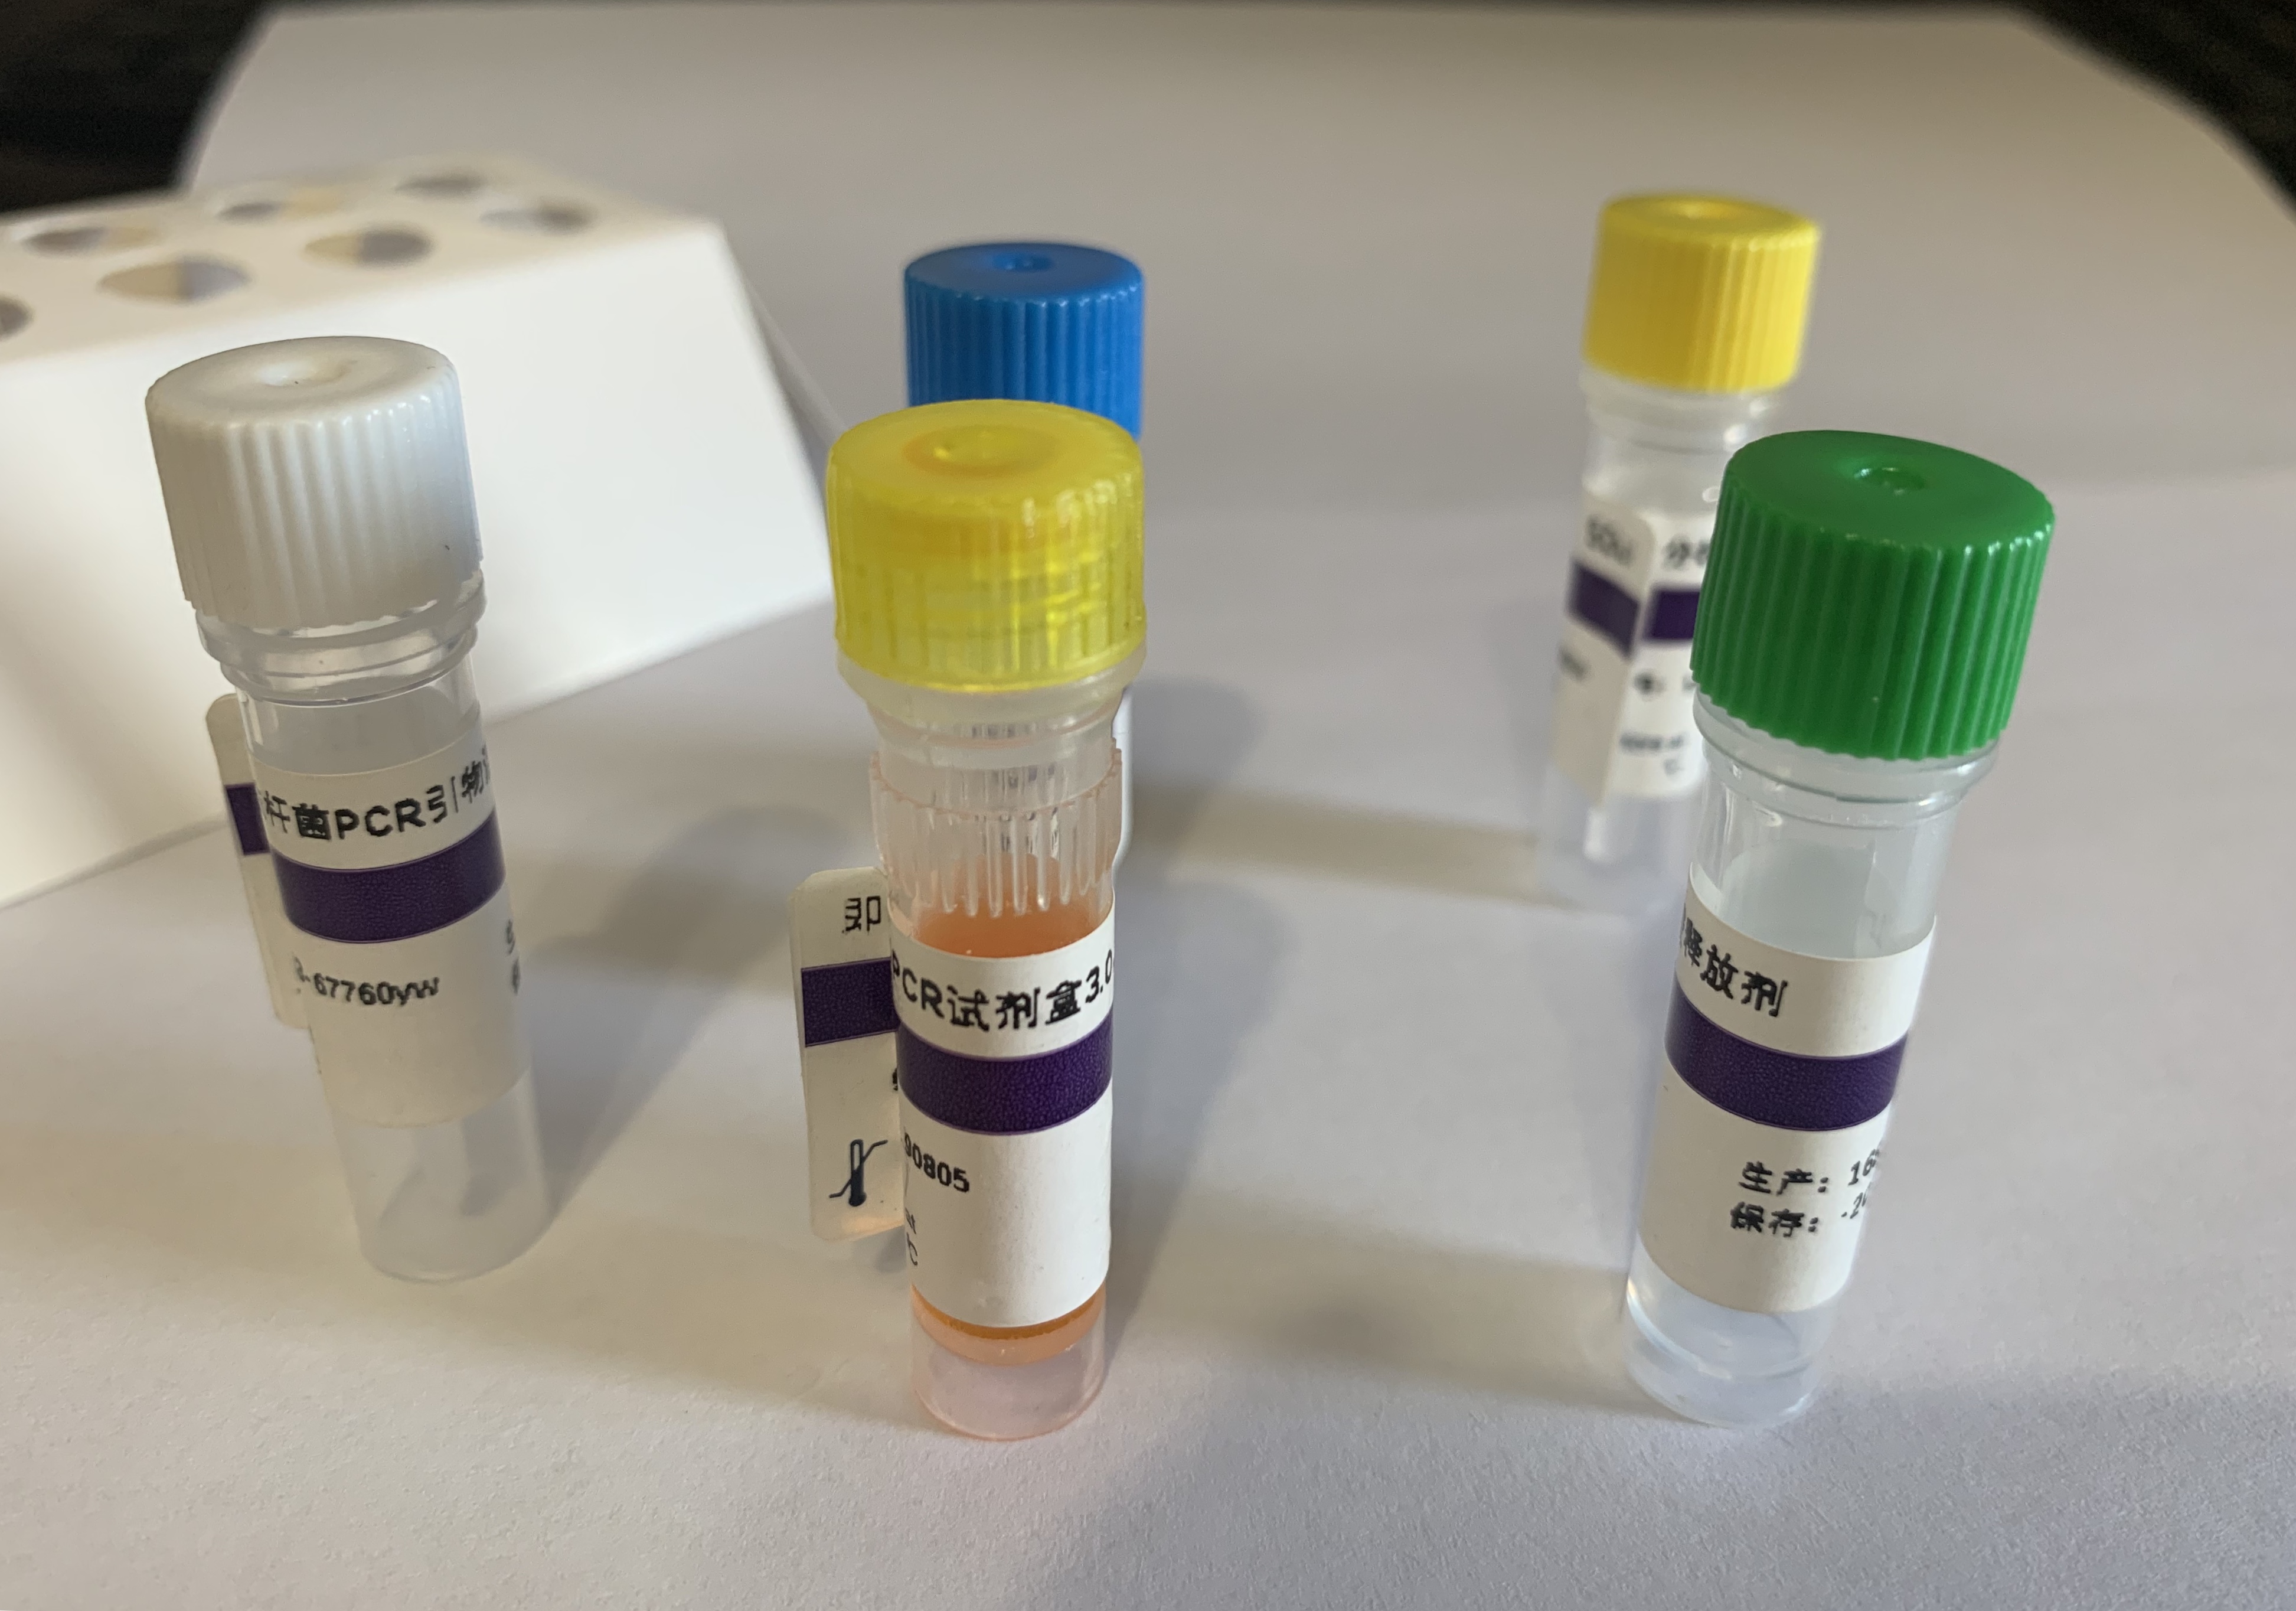 新型布尼亚病毒探针法荧光定量RT-PCR试剂盒